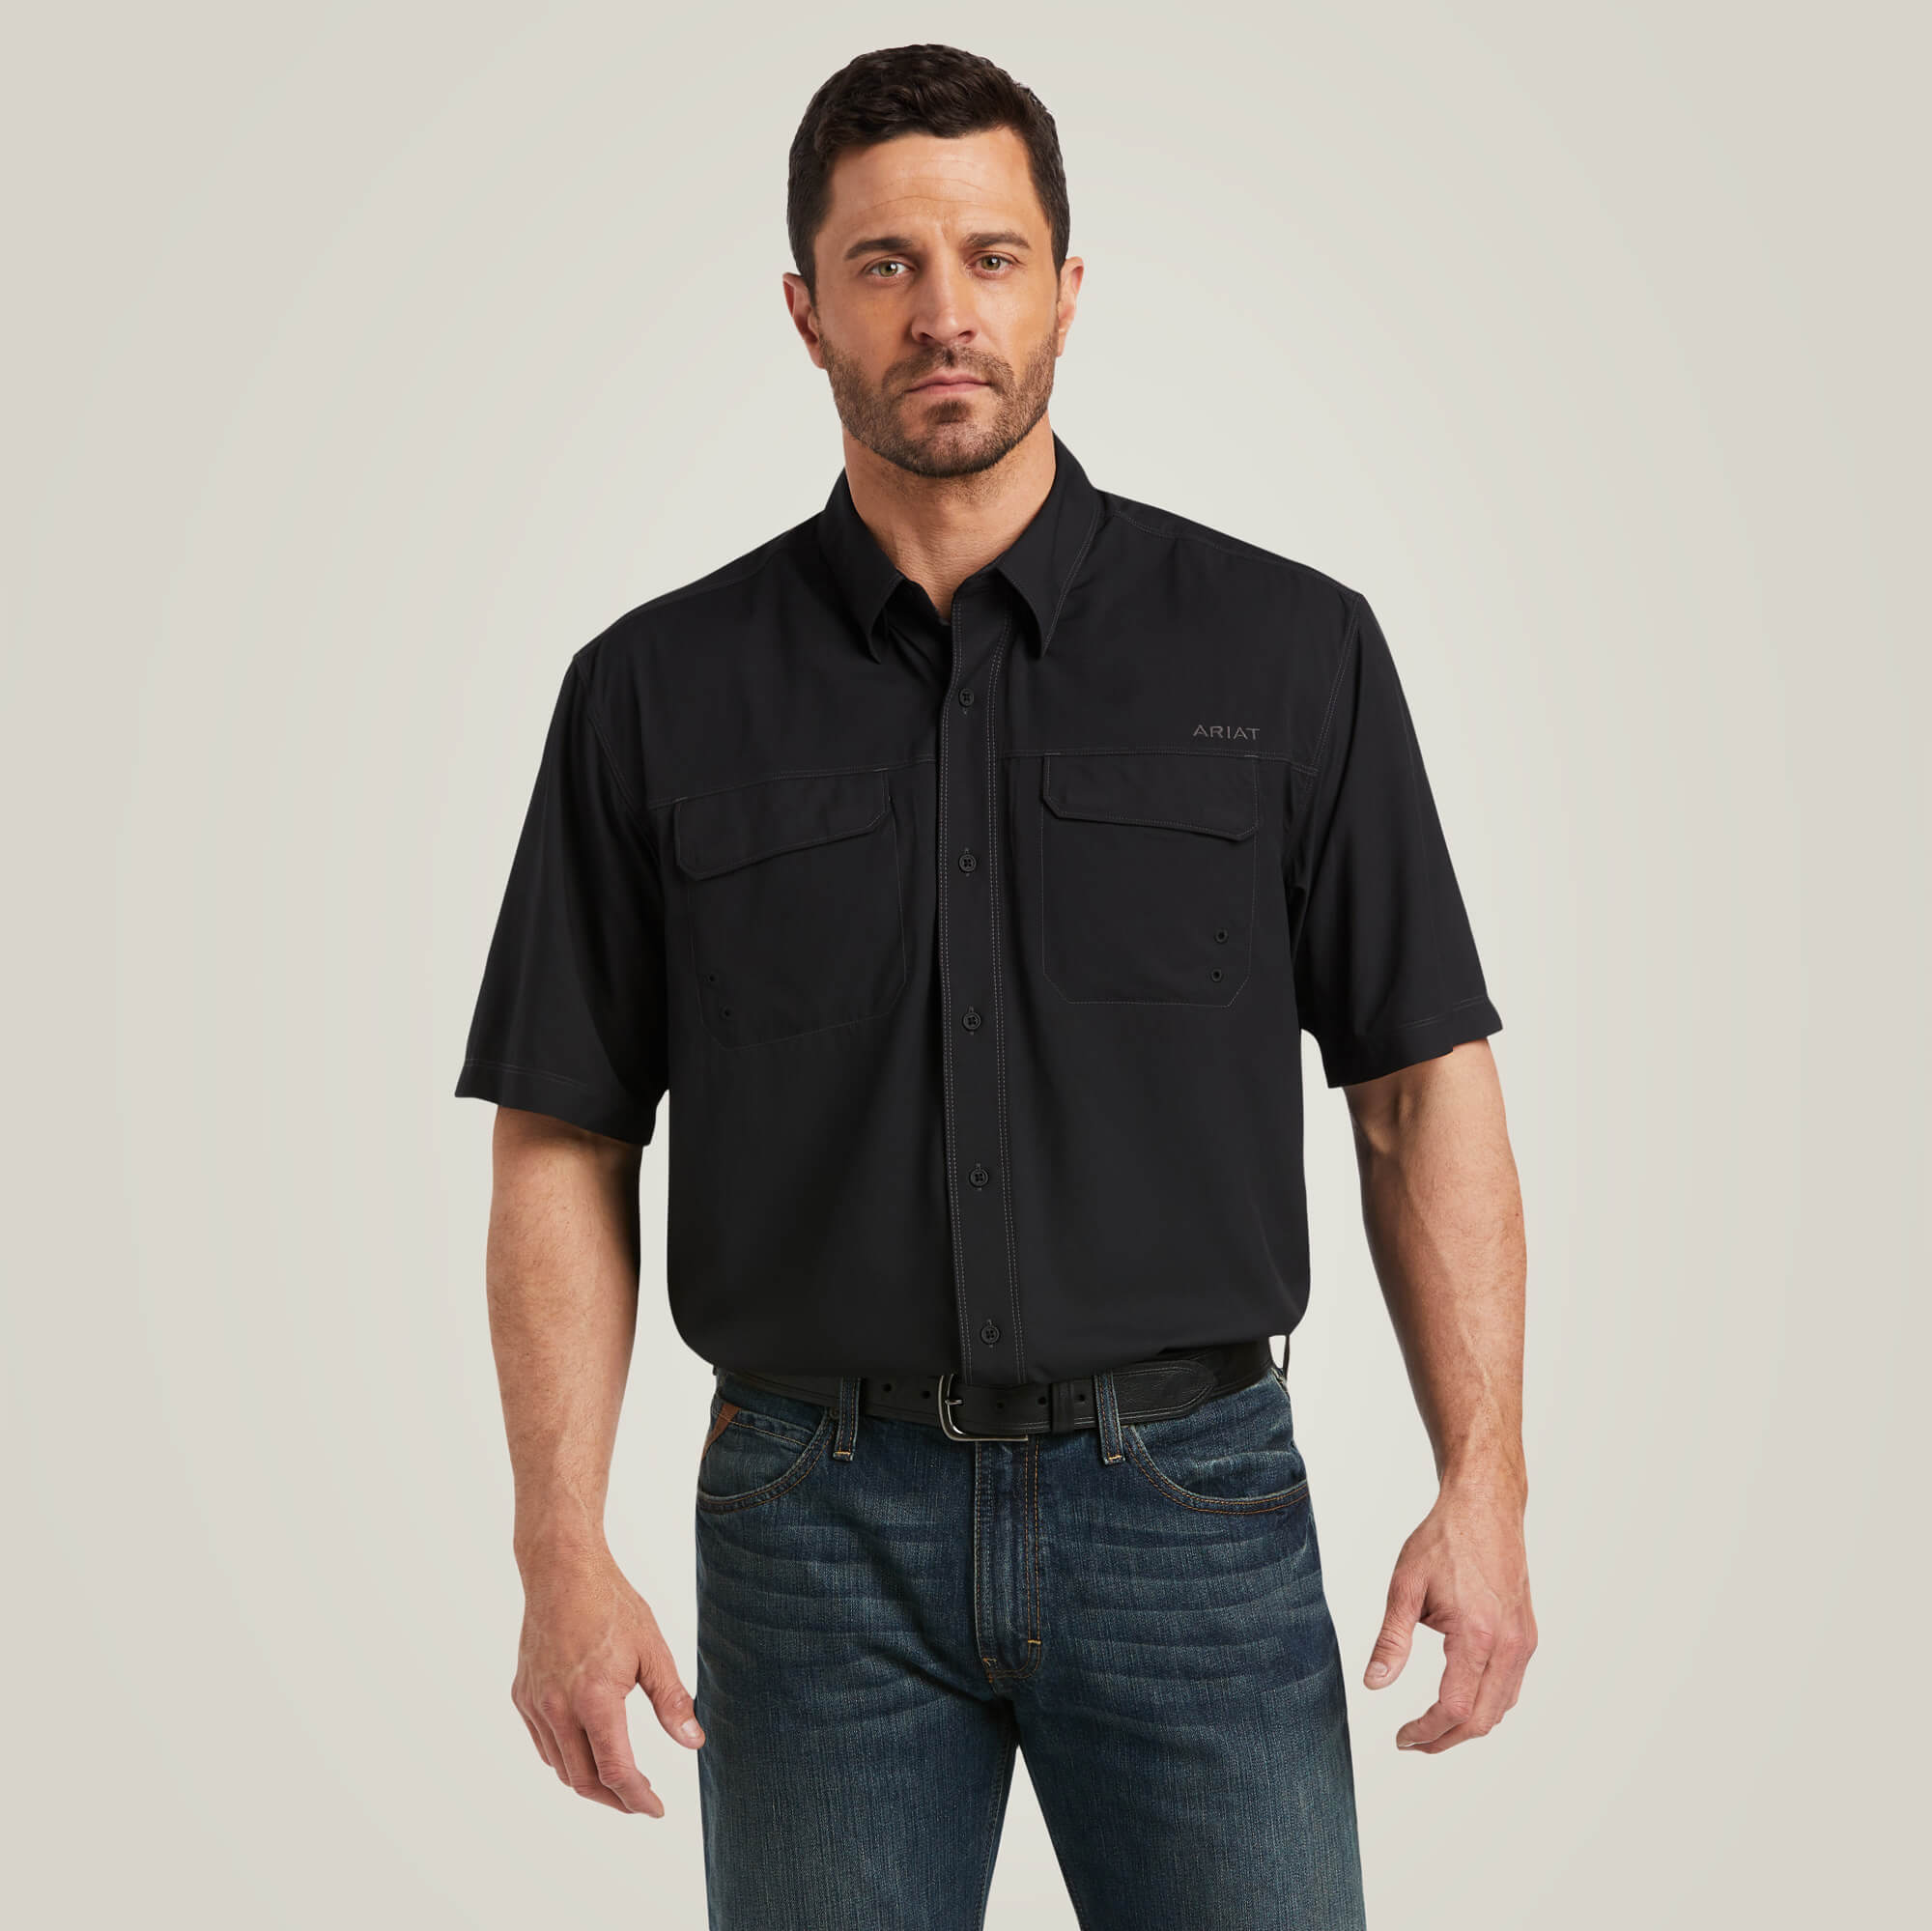 VentTEK Outbound Classic Fit Shirt-No. 10035388- Black